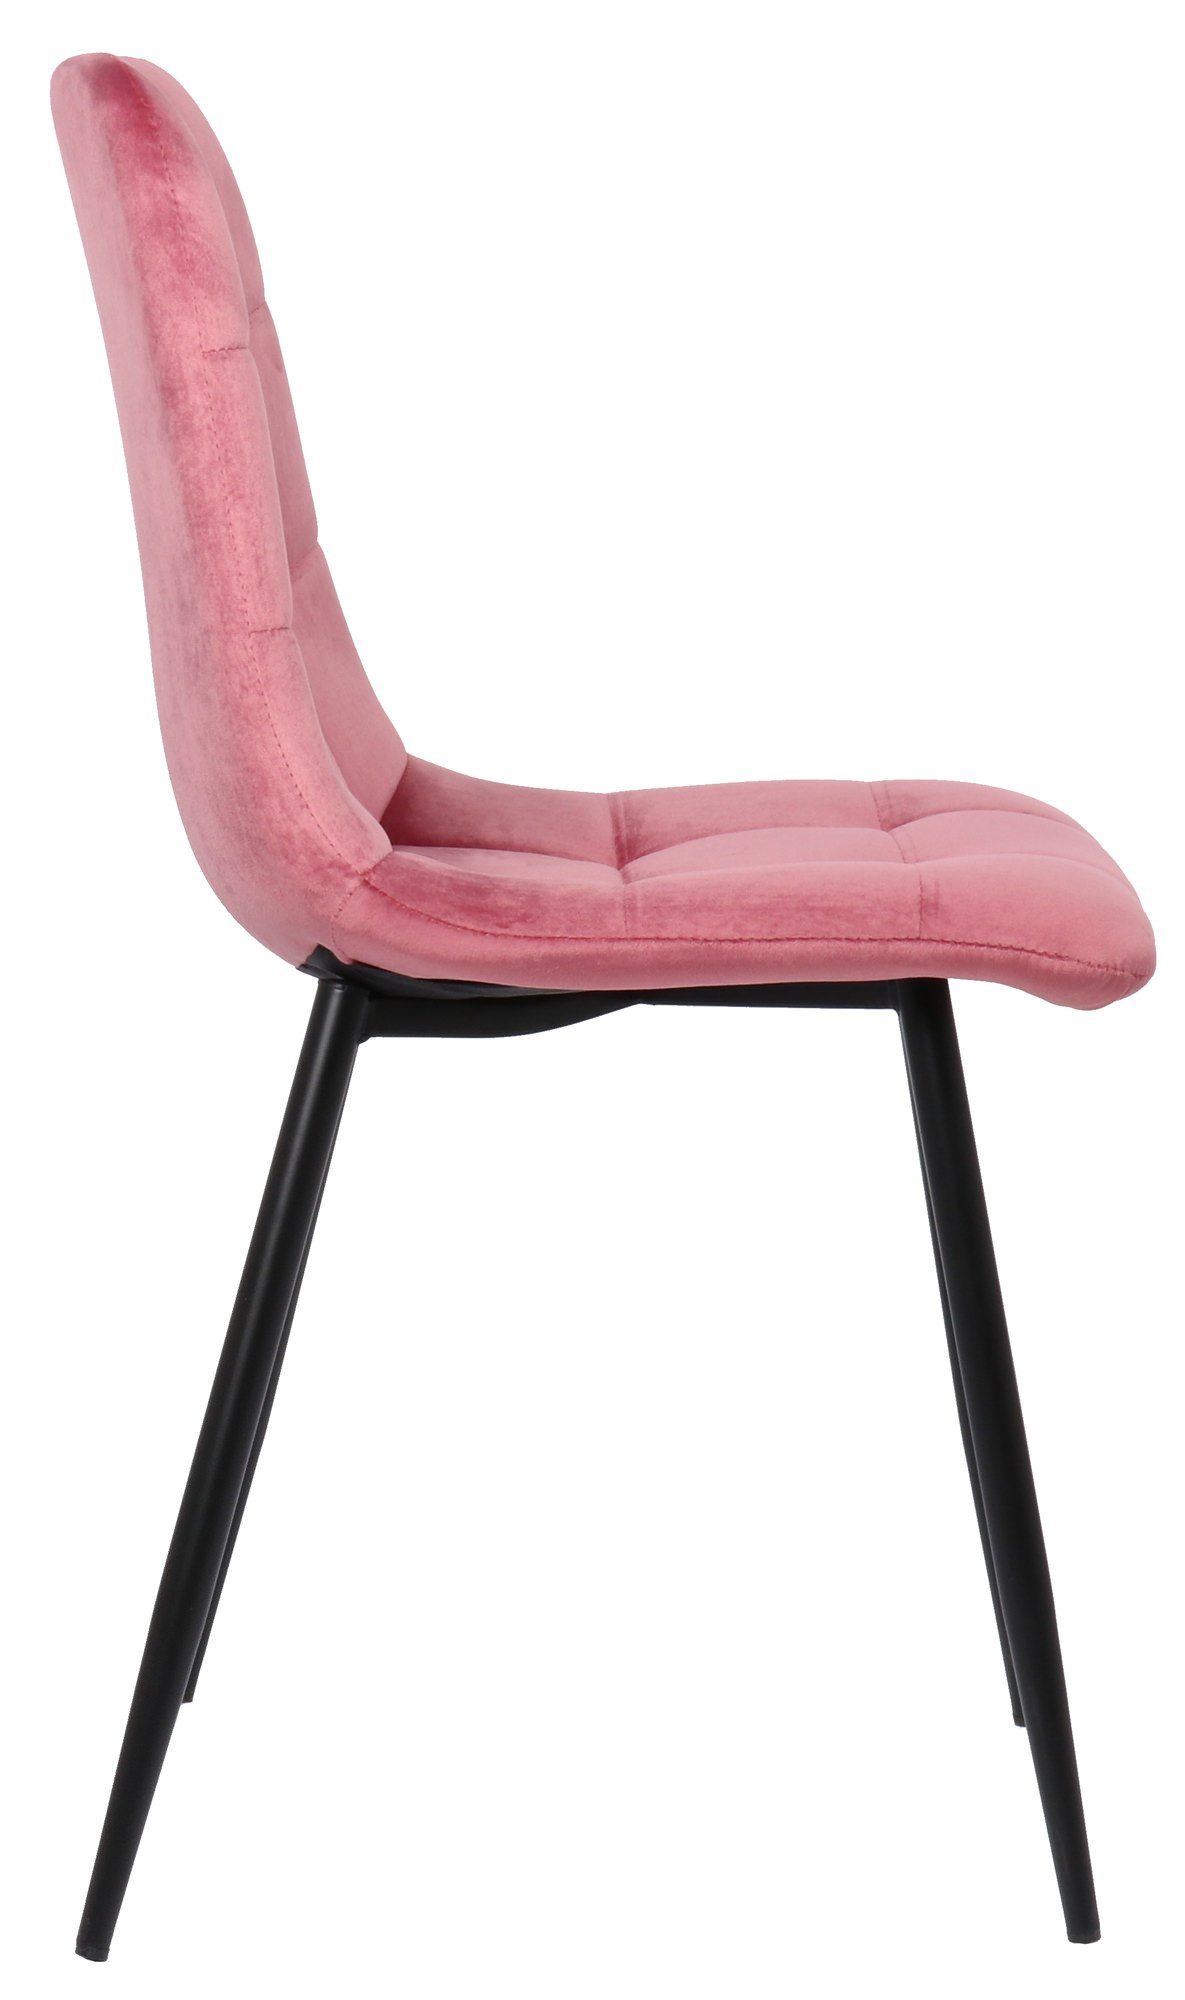 Konferenzstuhl - Esszimmerstuhl schwarz Metall Sitzfläche: Till (Küchenstuhl TPFLiving - Wohnzimmerstuhl pink - - Esstischstuhl Sitzfläche - Samt gepolsterter mit hochwertig Gestell: Polsterstuhl),